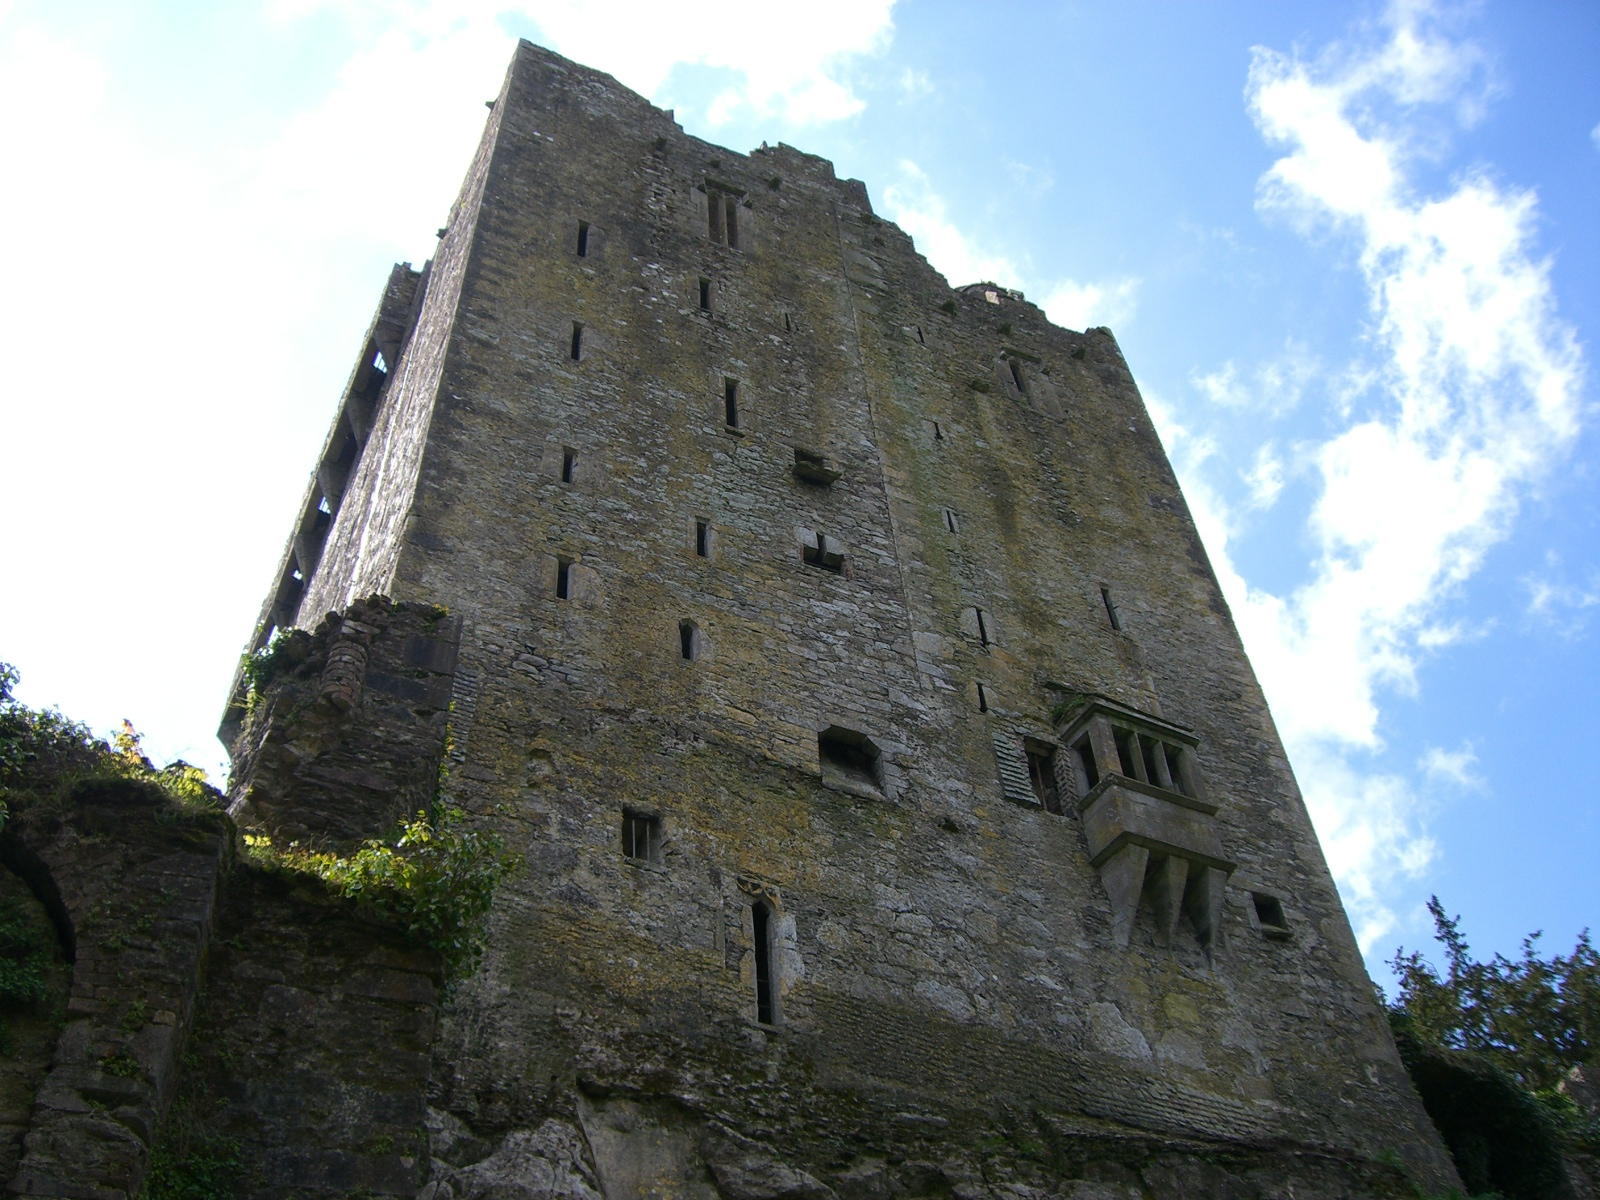 Blarney Castle face